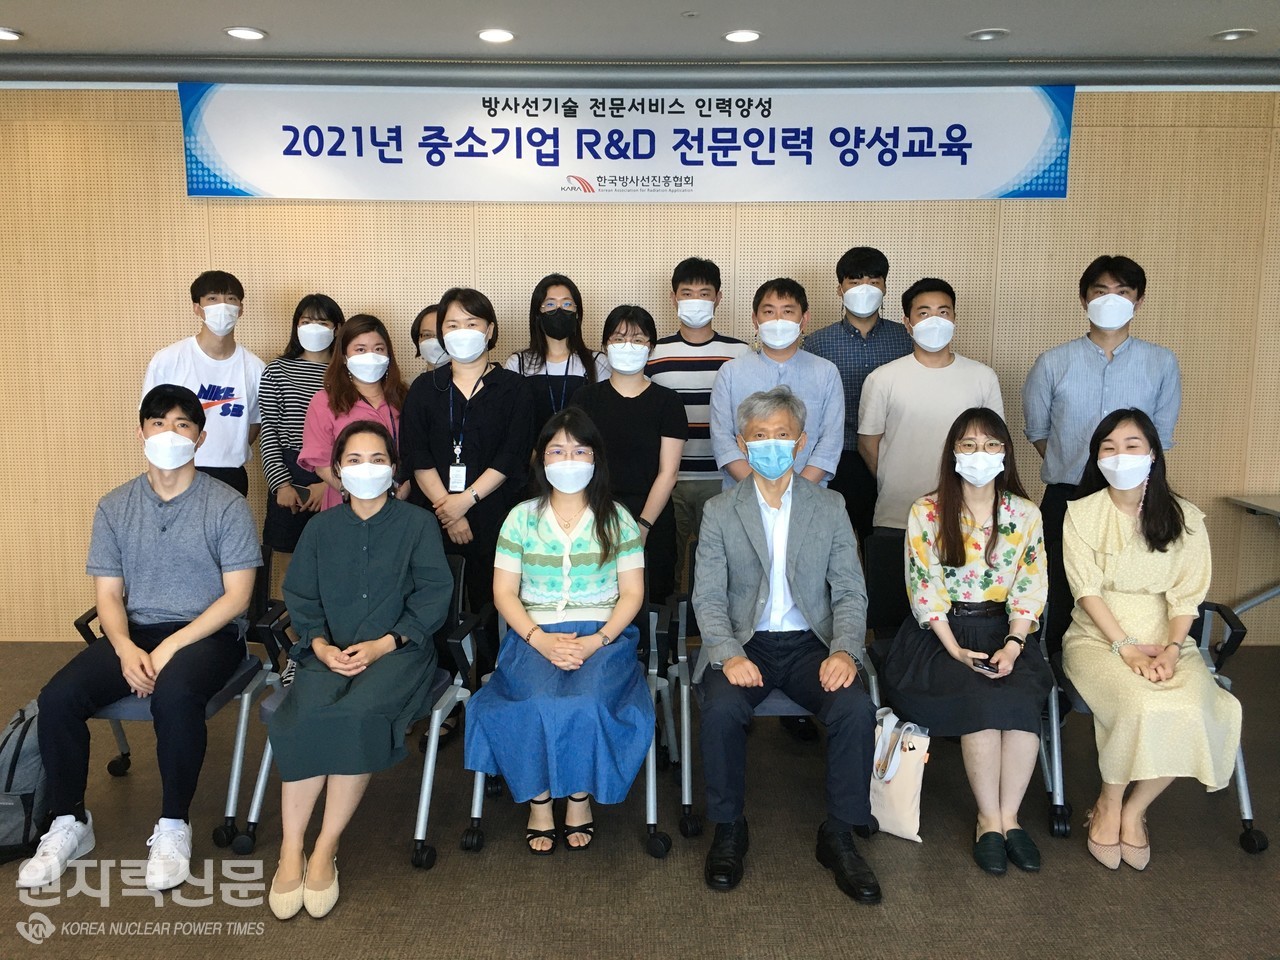 한국방사선진흥협회가 개최한 ‘중소기업 R&D 전문인력 양성교육’ 수료생들.